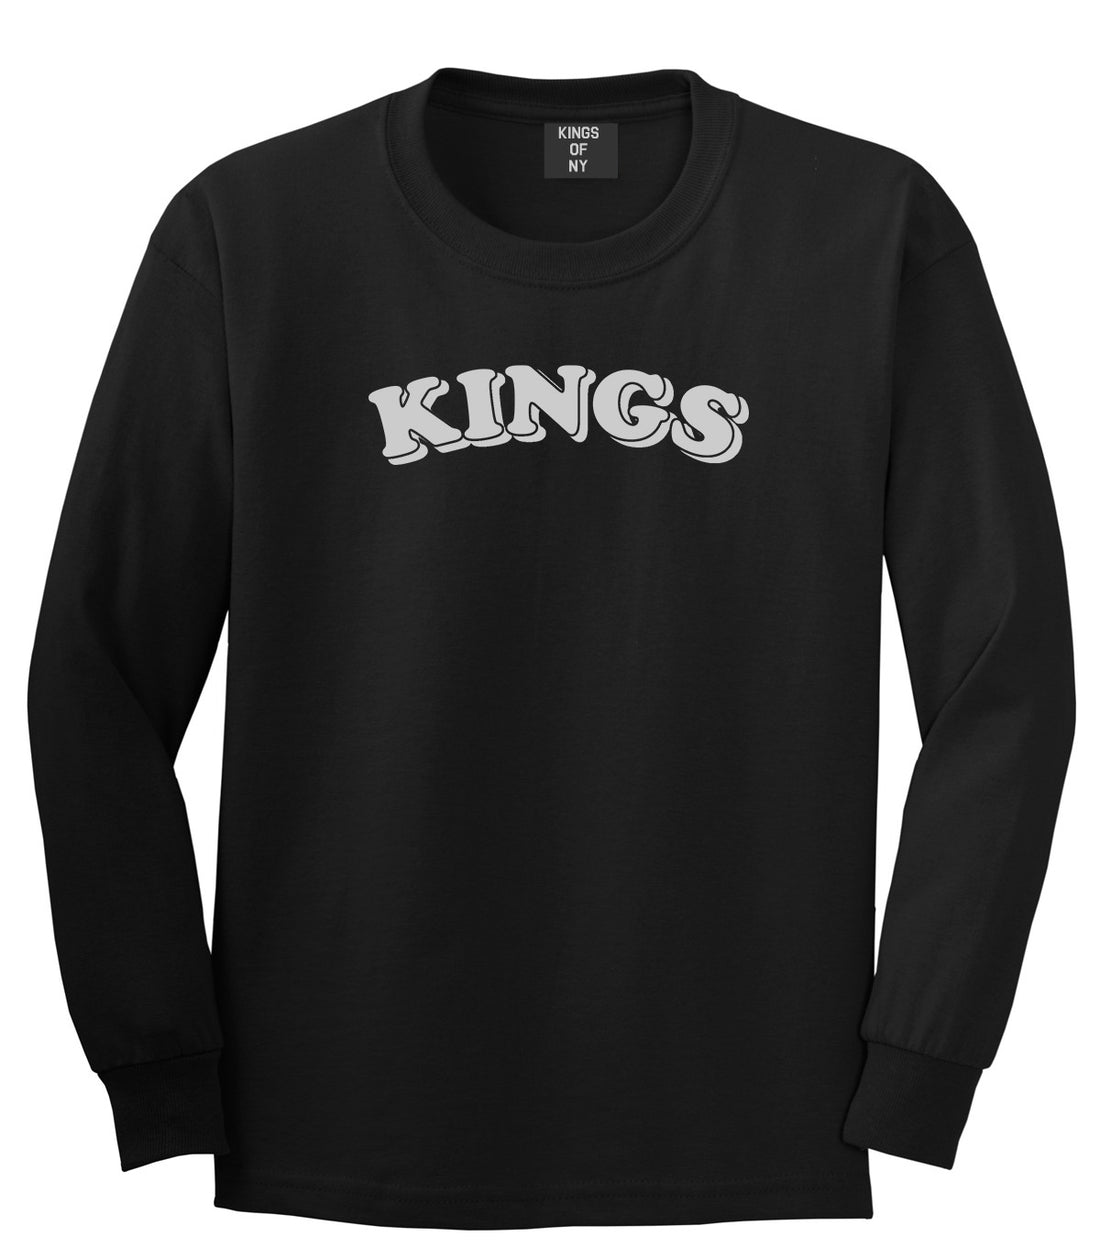 KINGS Bubble Letters Long Sleeve T-Shirt in Black